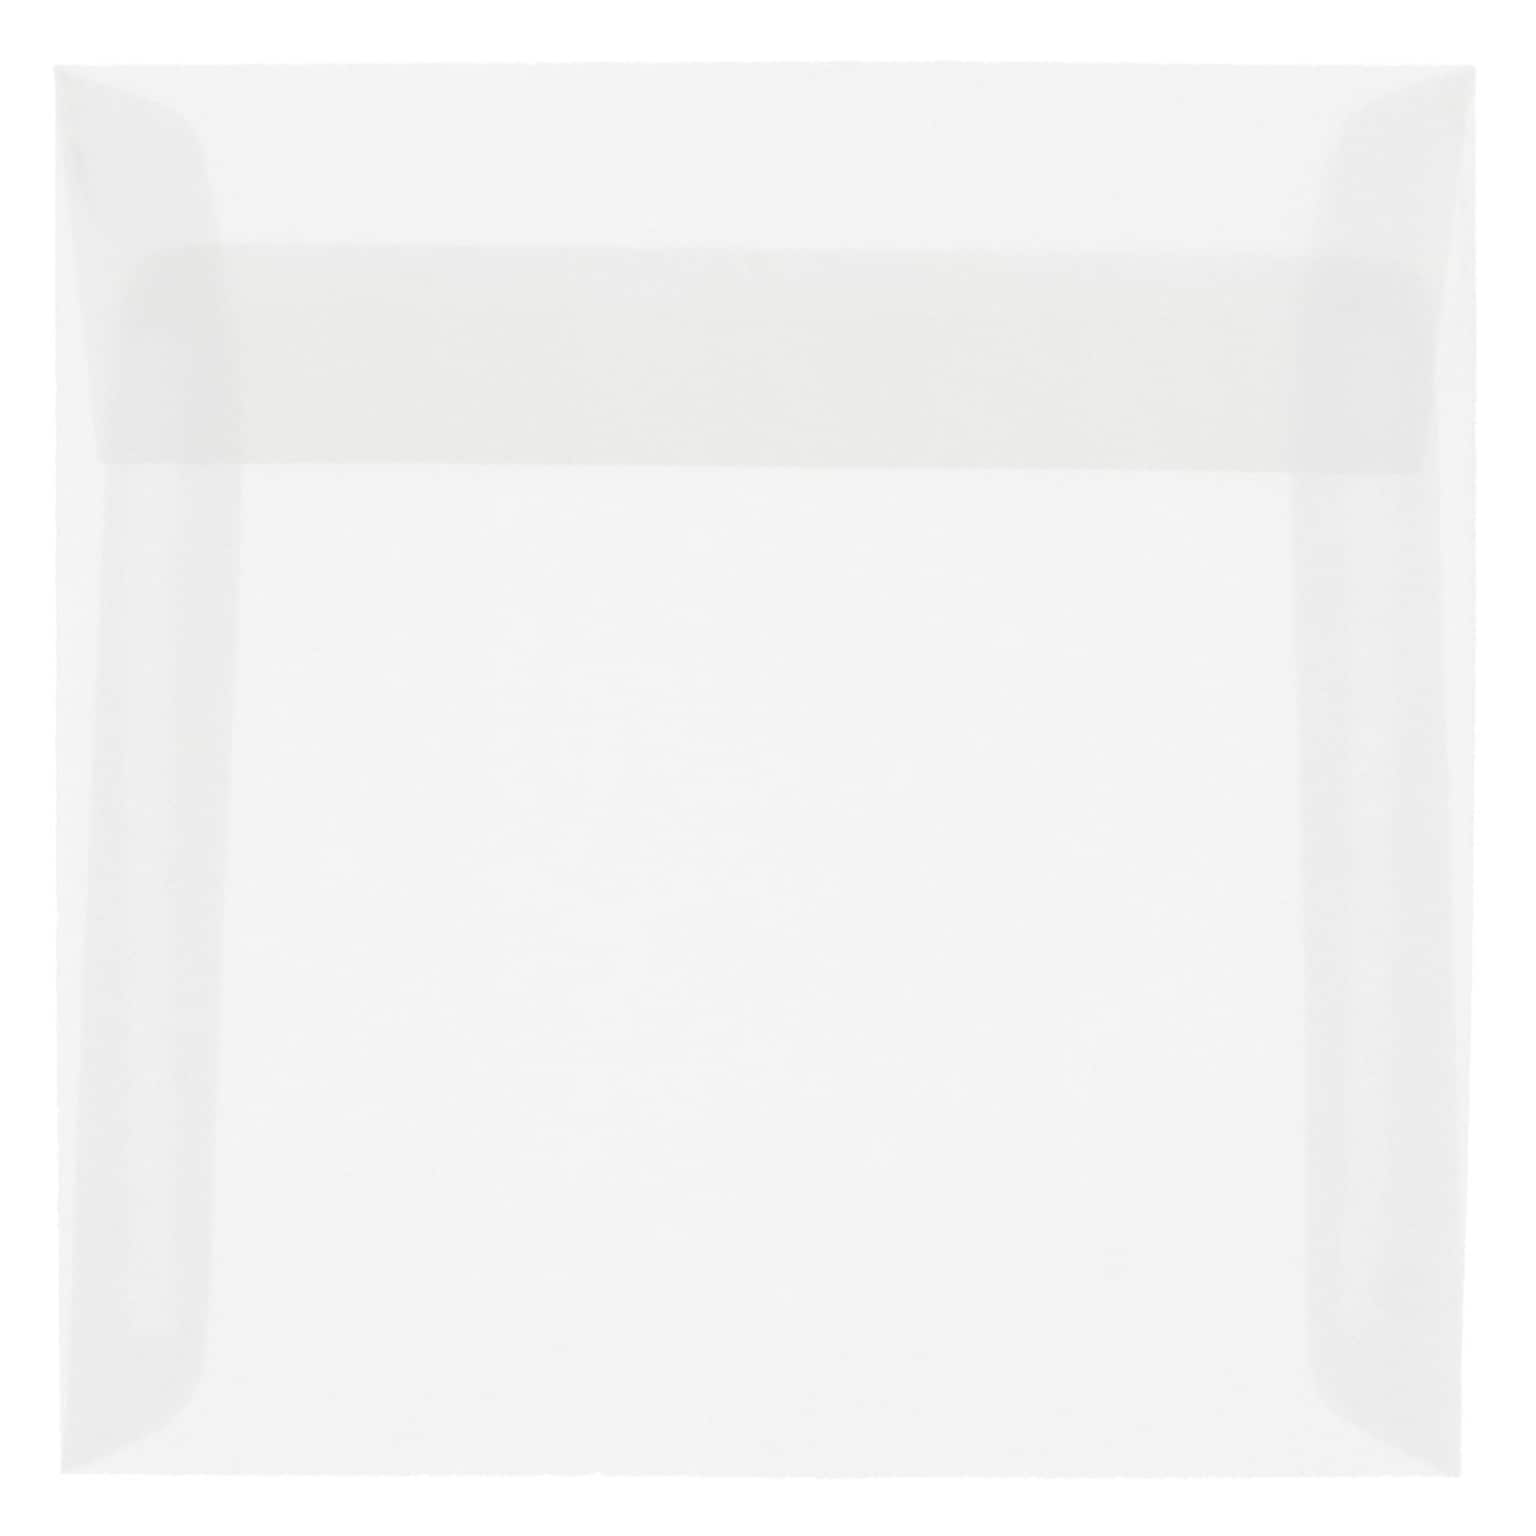 JAM Paper 8 x 8 Square Translucent Vellum Invitation Envelopes, Clear, 25/Pack (51287)